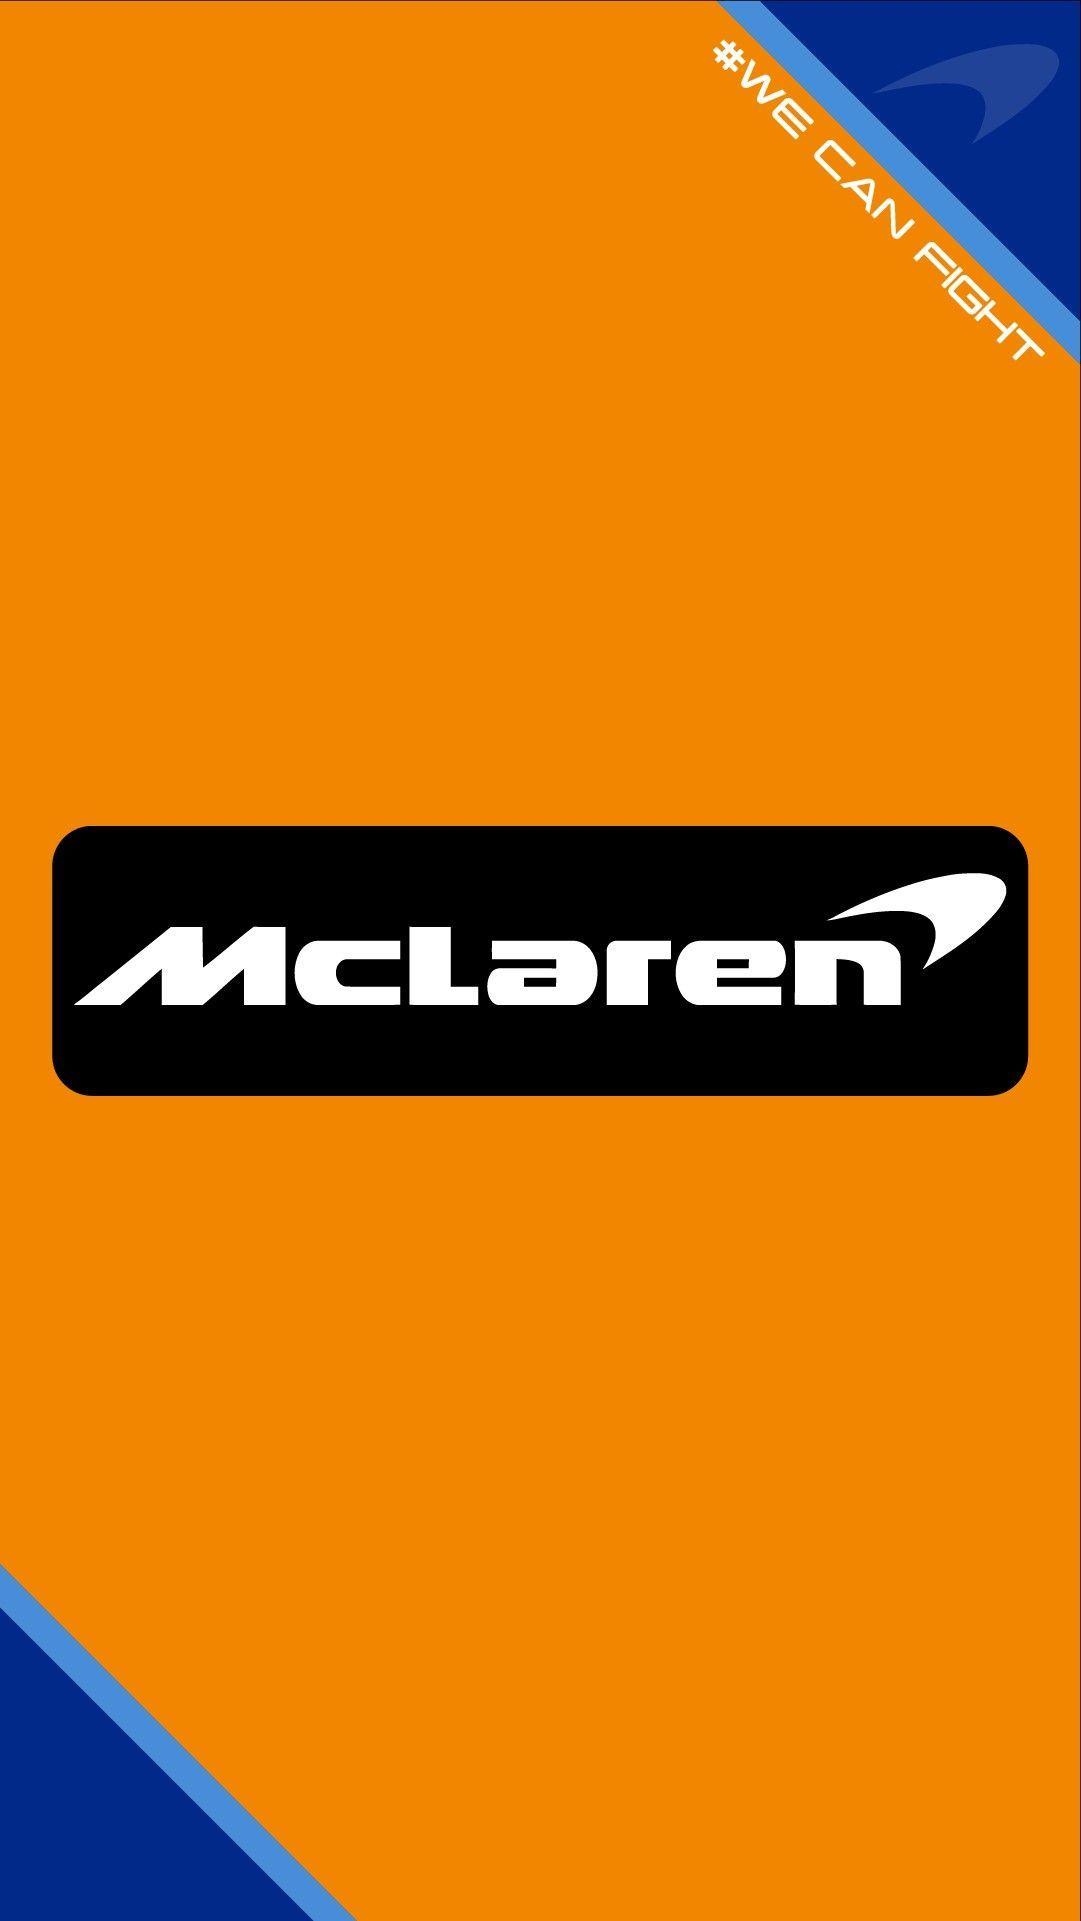 McLaren F1 Racing Logo - Mclaren f1 team wallpaper 2018 #mclaren #formula1 #f1 #renault ...